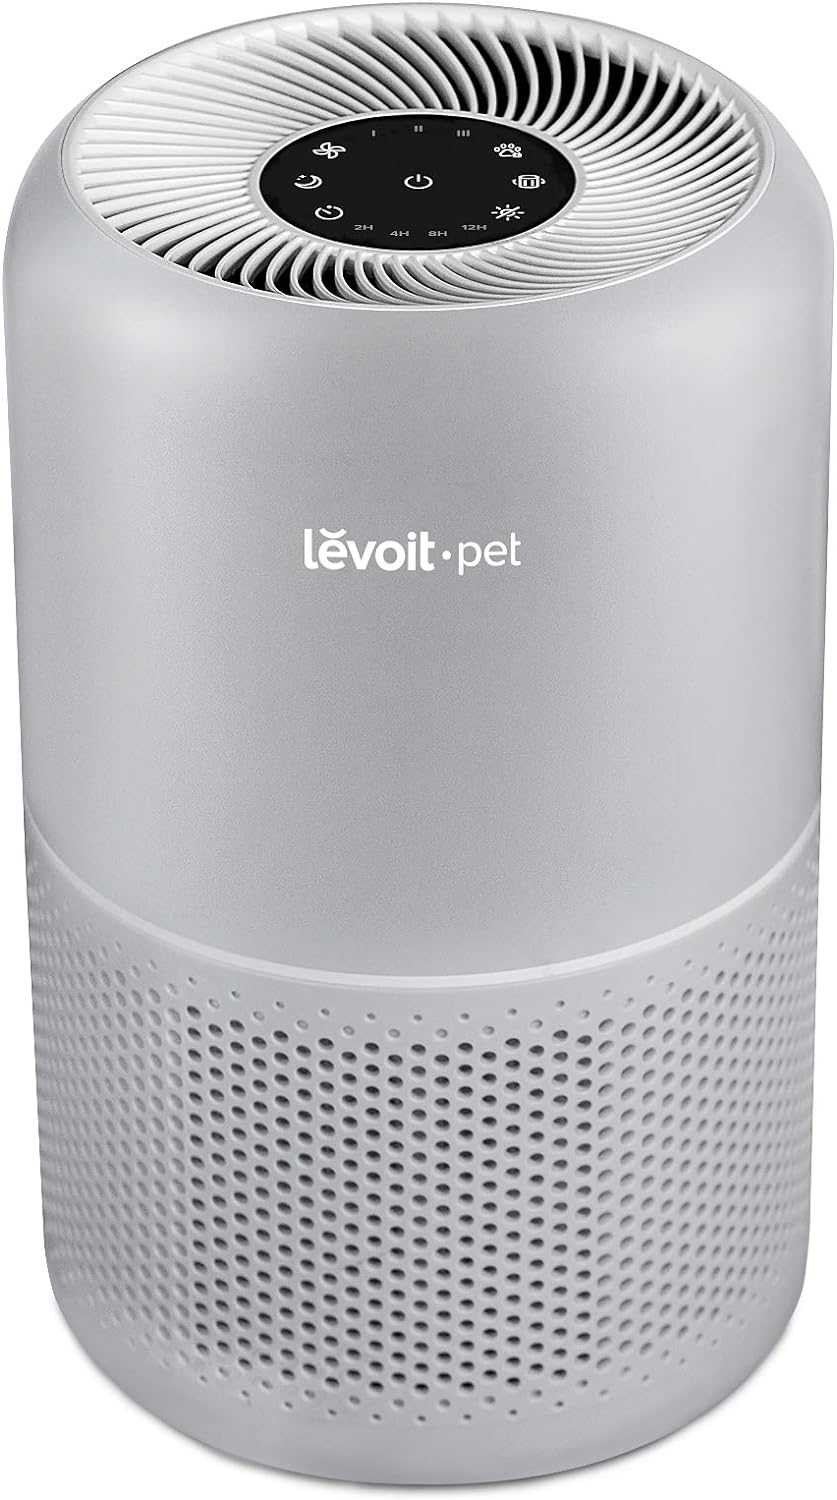 Levoit Core P350 Pet Care Air Purifier